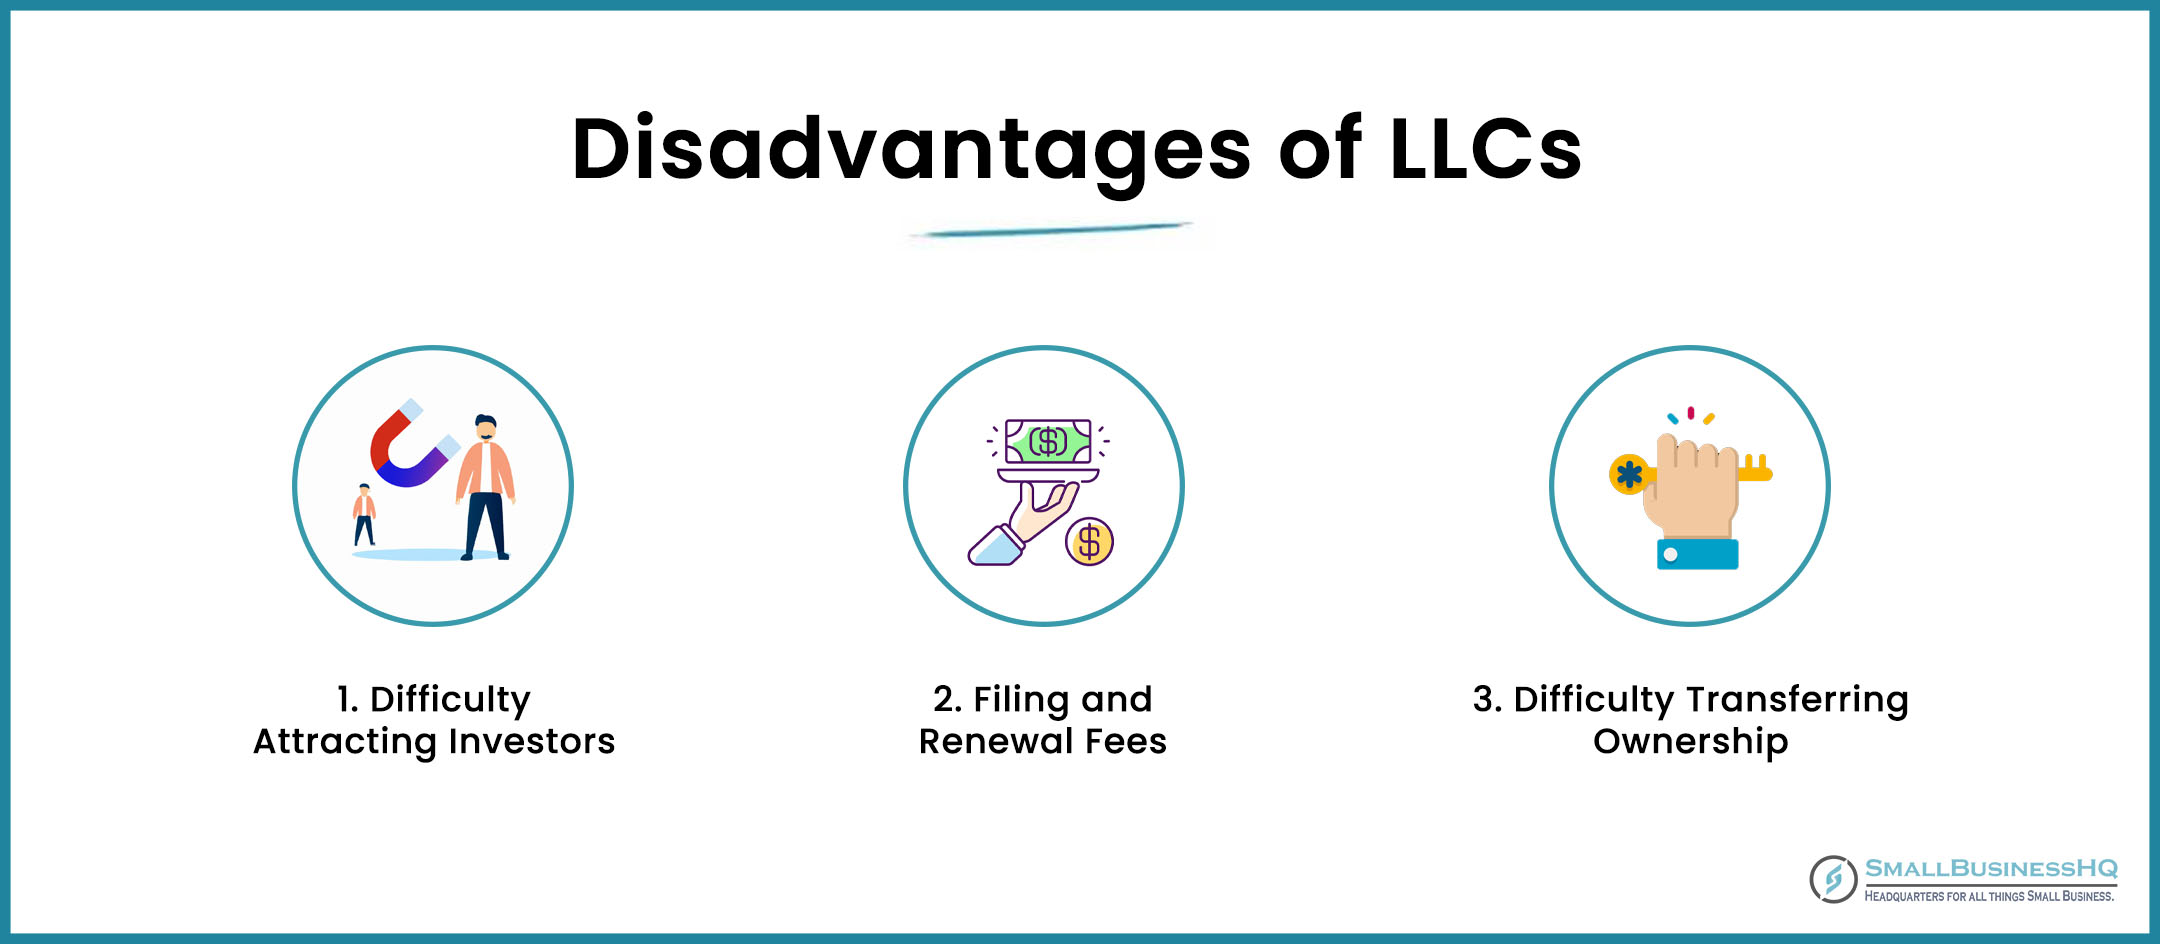 Disadvantages of LLCs